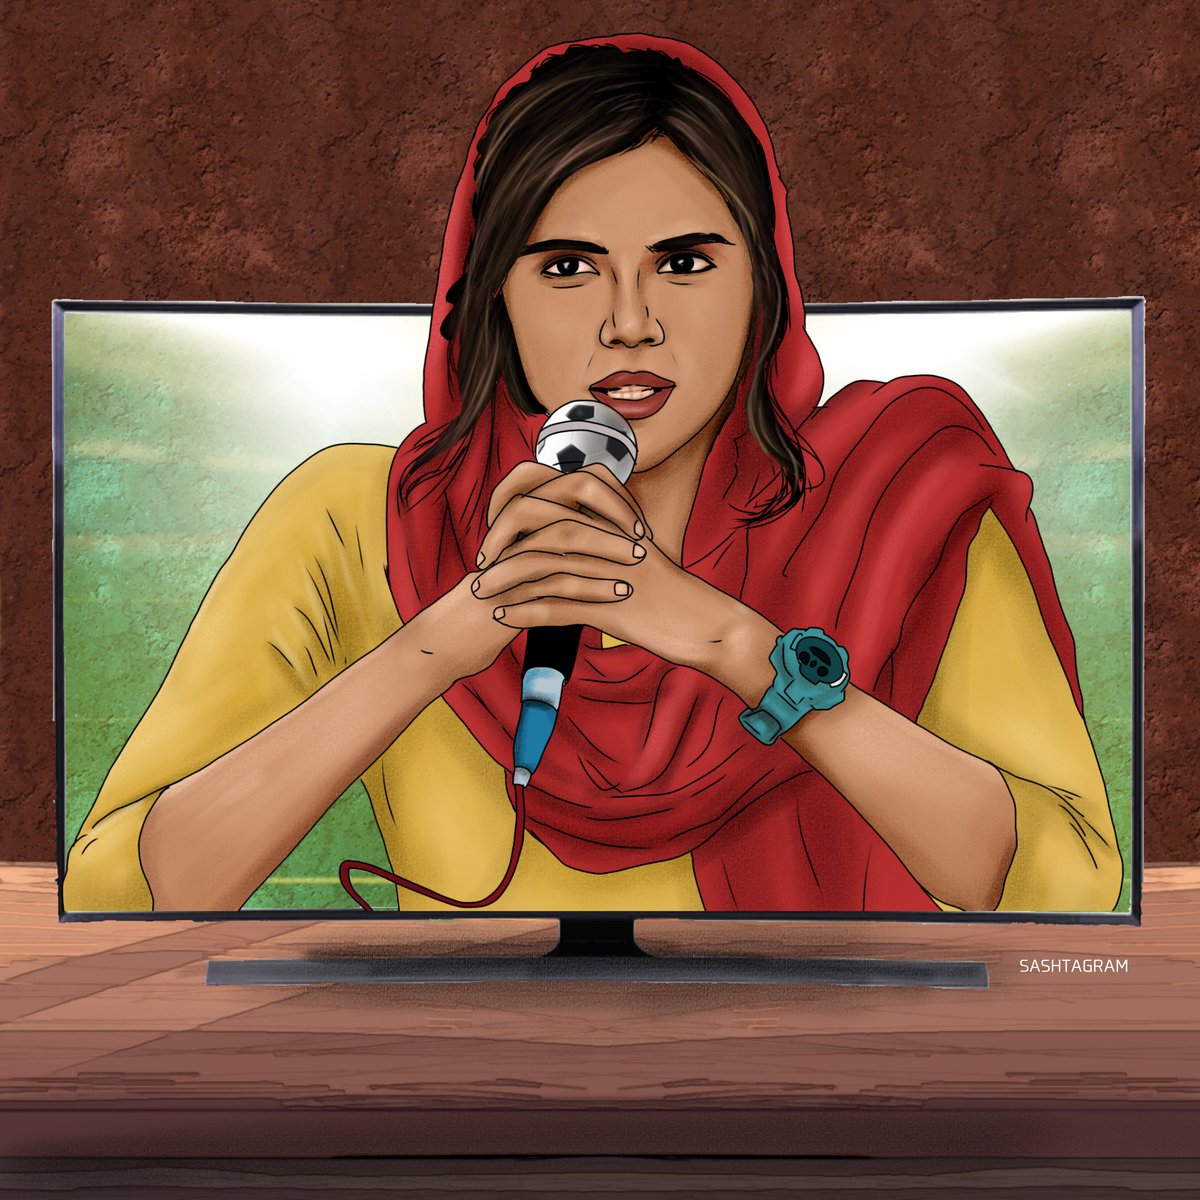 The Lady commentator Pathu is here ❤✨ Fathima @kalyanipriyan ❤🦋 @Jagadishbliss @Sudhans2017 @manuckumar4 @HeshamAWMusic @TheRoute @PassionStudios_ @thinkmusicindia @Netflix_INSouth #SeshamMikeilFathimaOnNetflix